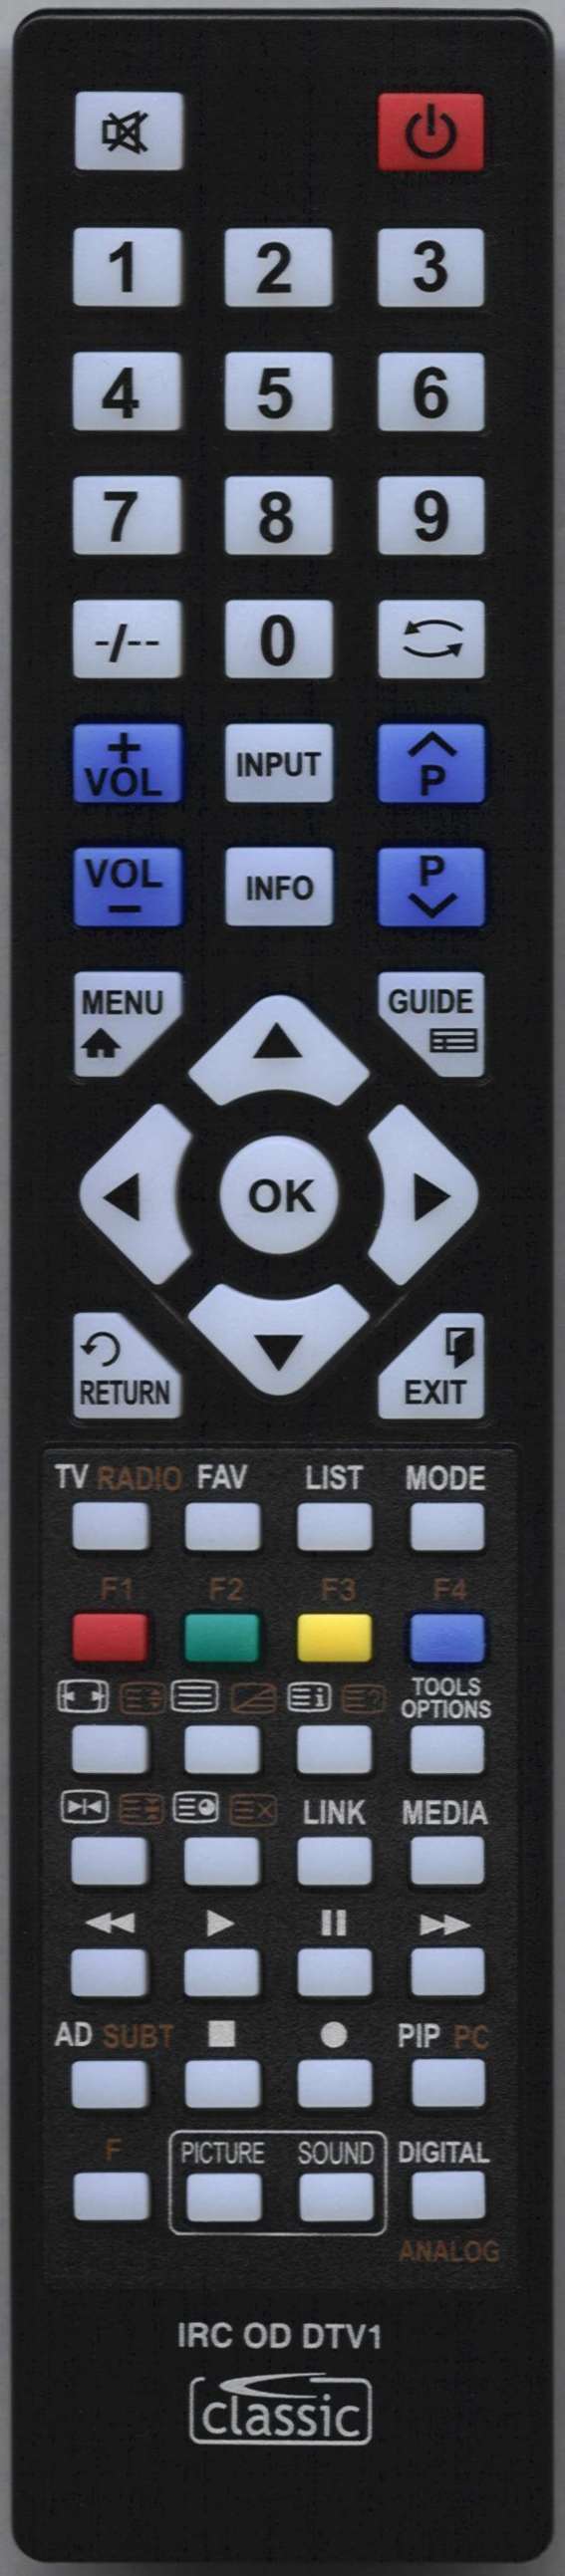 LG 75UN8100 Remote Control Alternative